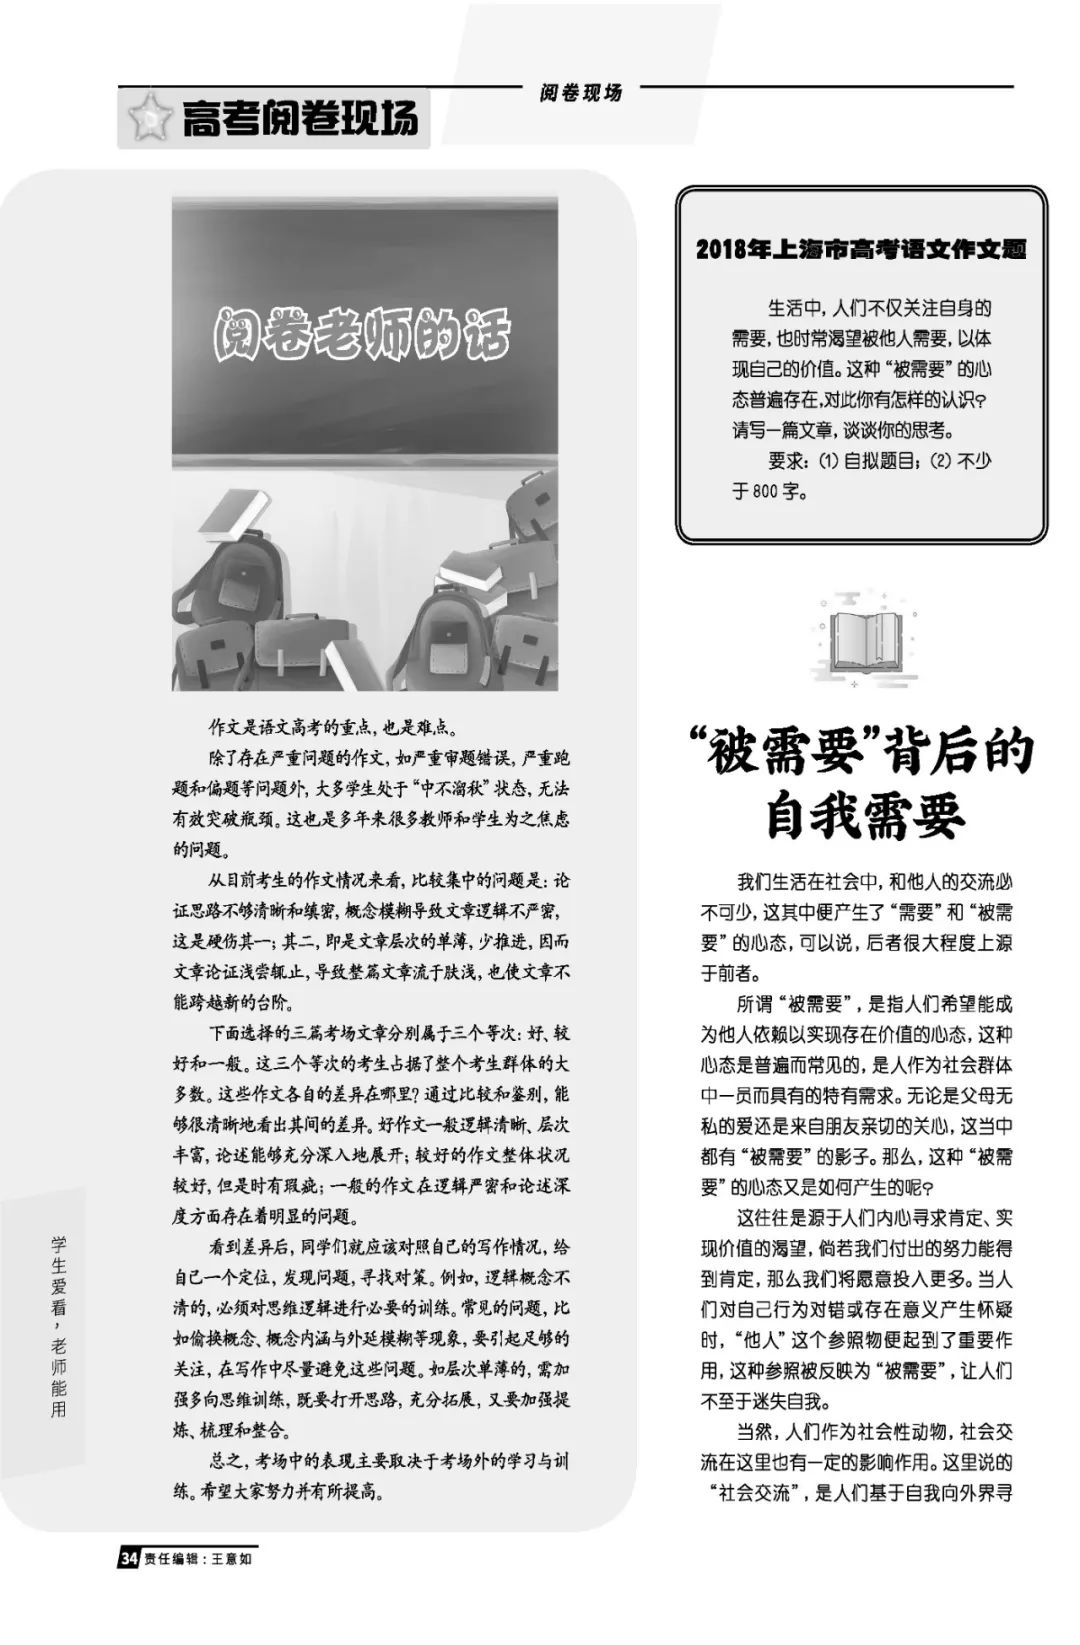 必備參考書：2019年上海語文中高考升學指導特刊，現已正式出版！ 留學 第7張